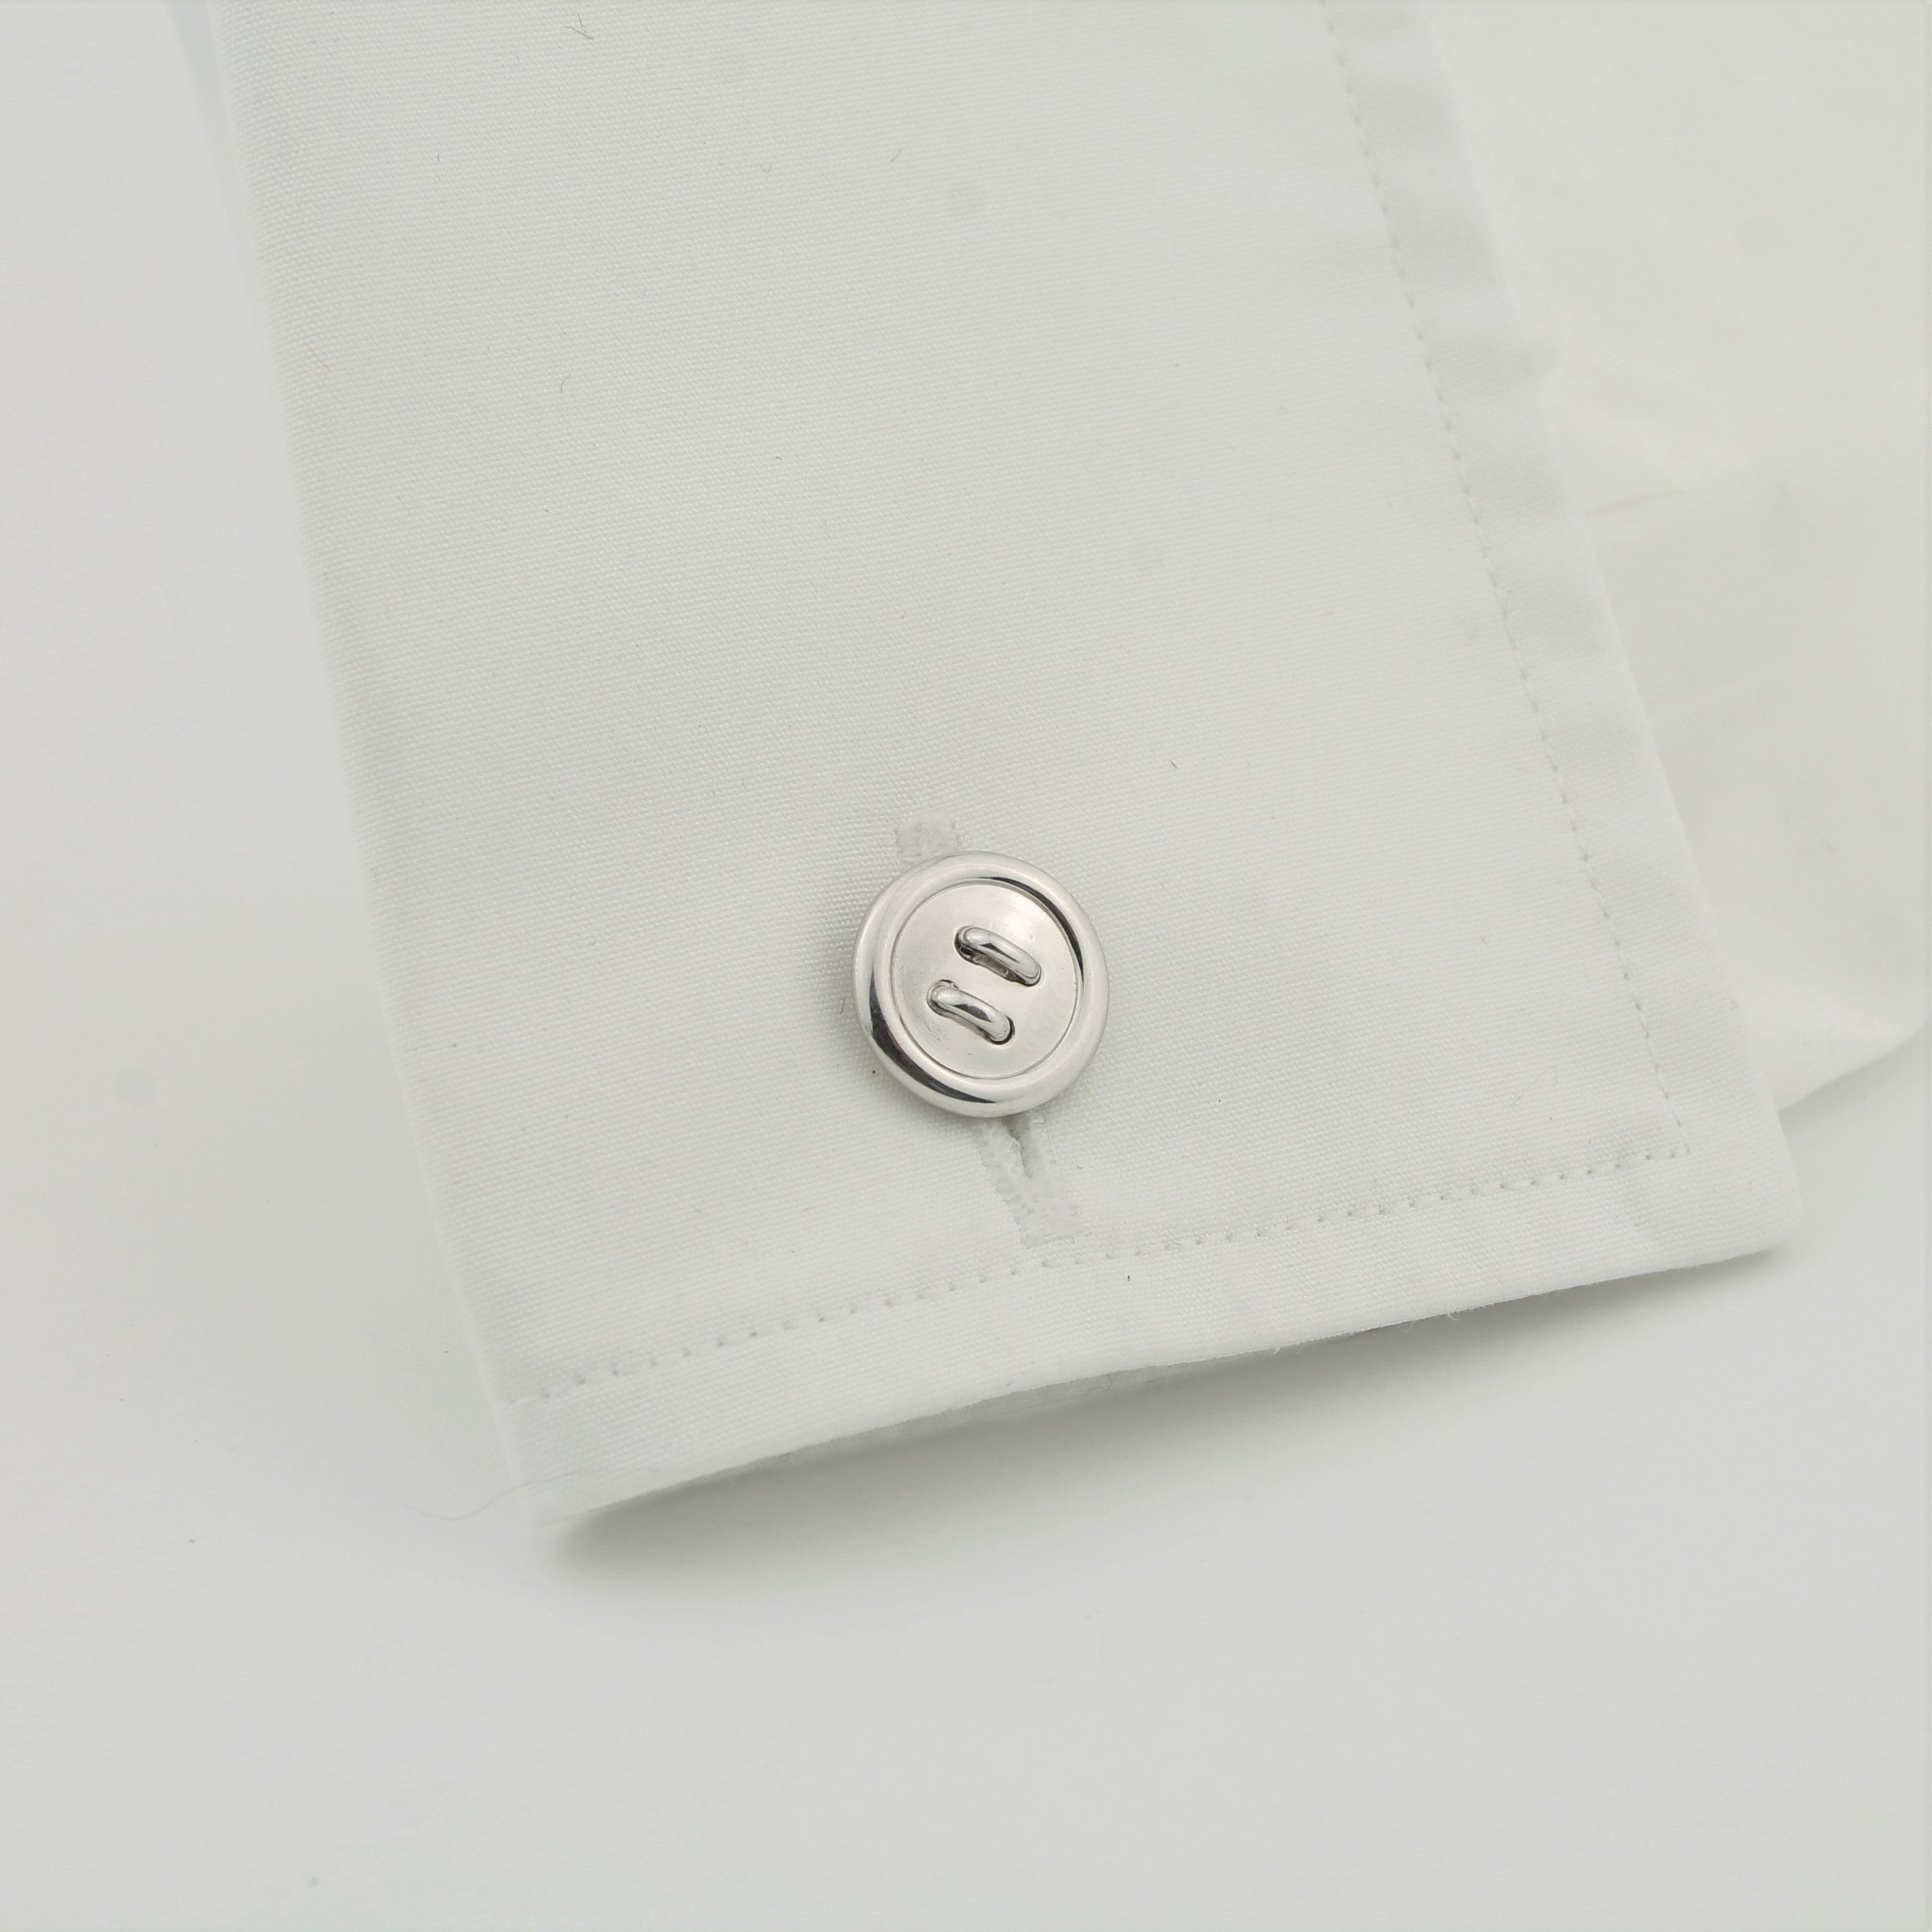 Longmire silver button cufflinks in a cuff